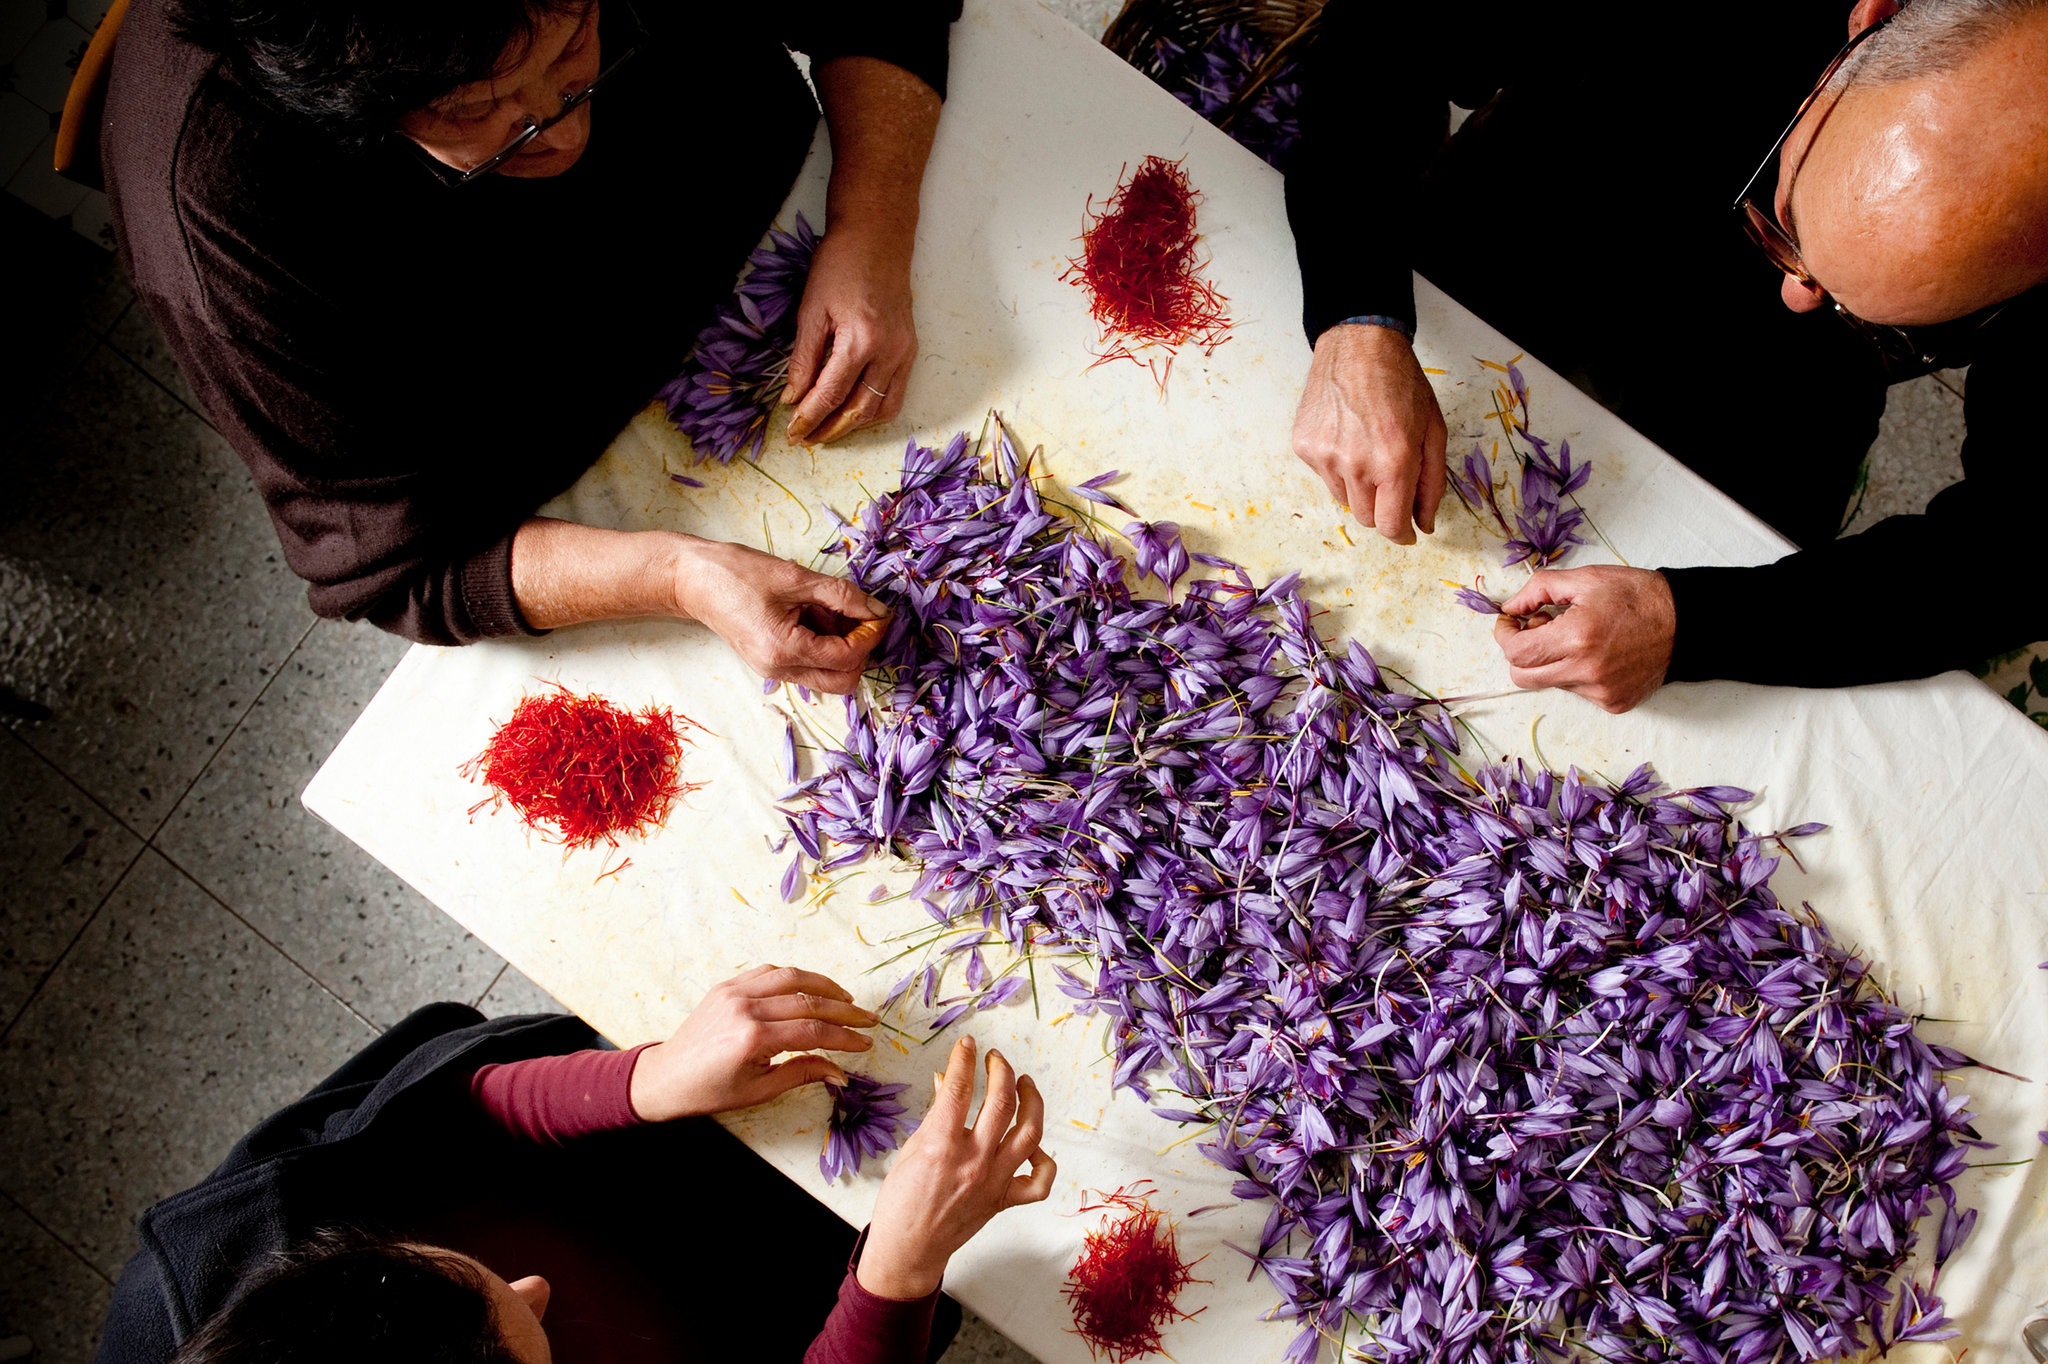 Cận cảnh quá trình thu hoạch saffron - thứ gia vị đắt nhất thế giới được mệnh danh “vàng đỏ“ có giá hàng tỷ đồng 1kg, từng được Nữ hoàng Ai Cập dùng để dưỡng nhan - Ảnh 9.